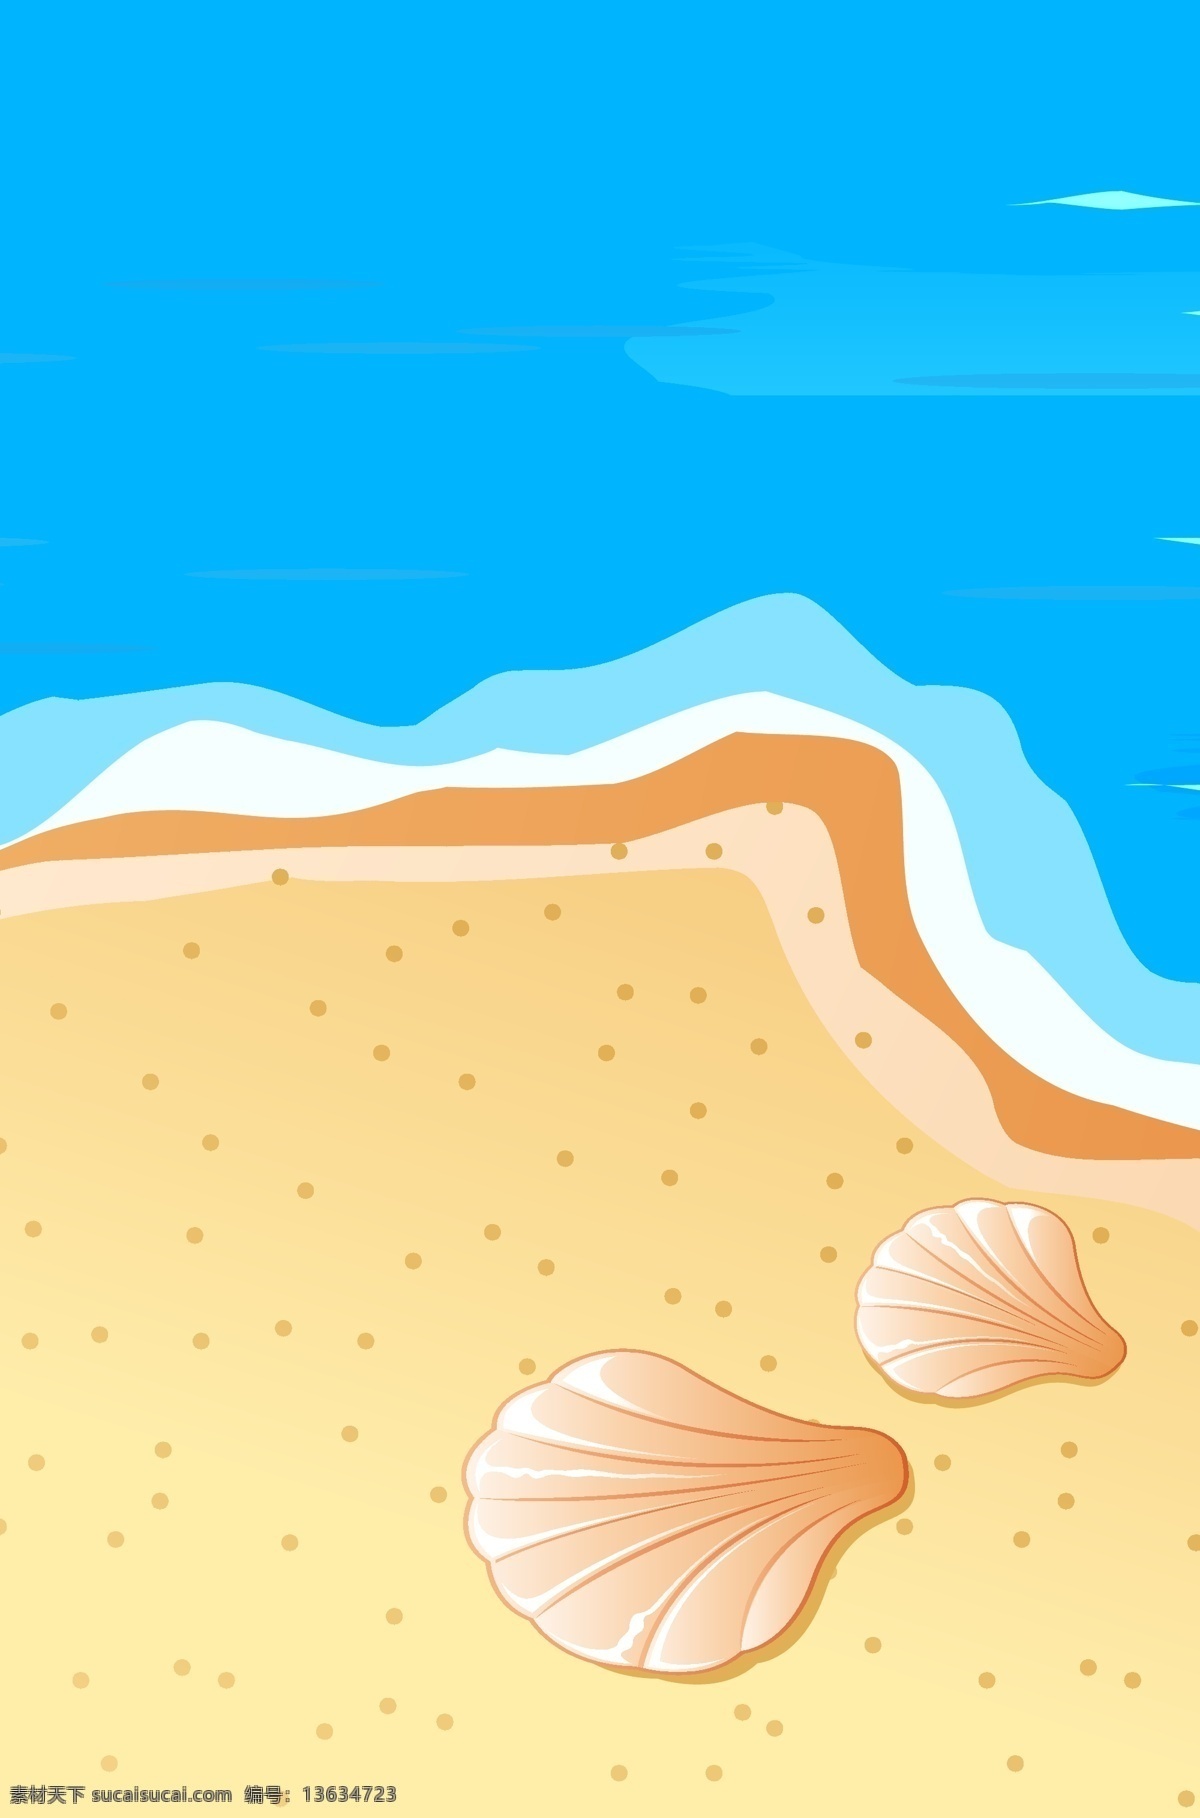 简约 沙滩 海滩 风景 背景 模板 旅游 景色 清爽 大海 天空 贝壳 分层文件 源文件 高清背景 设计素材 创意合成